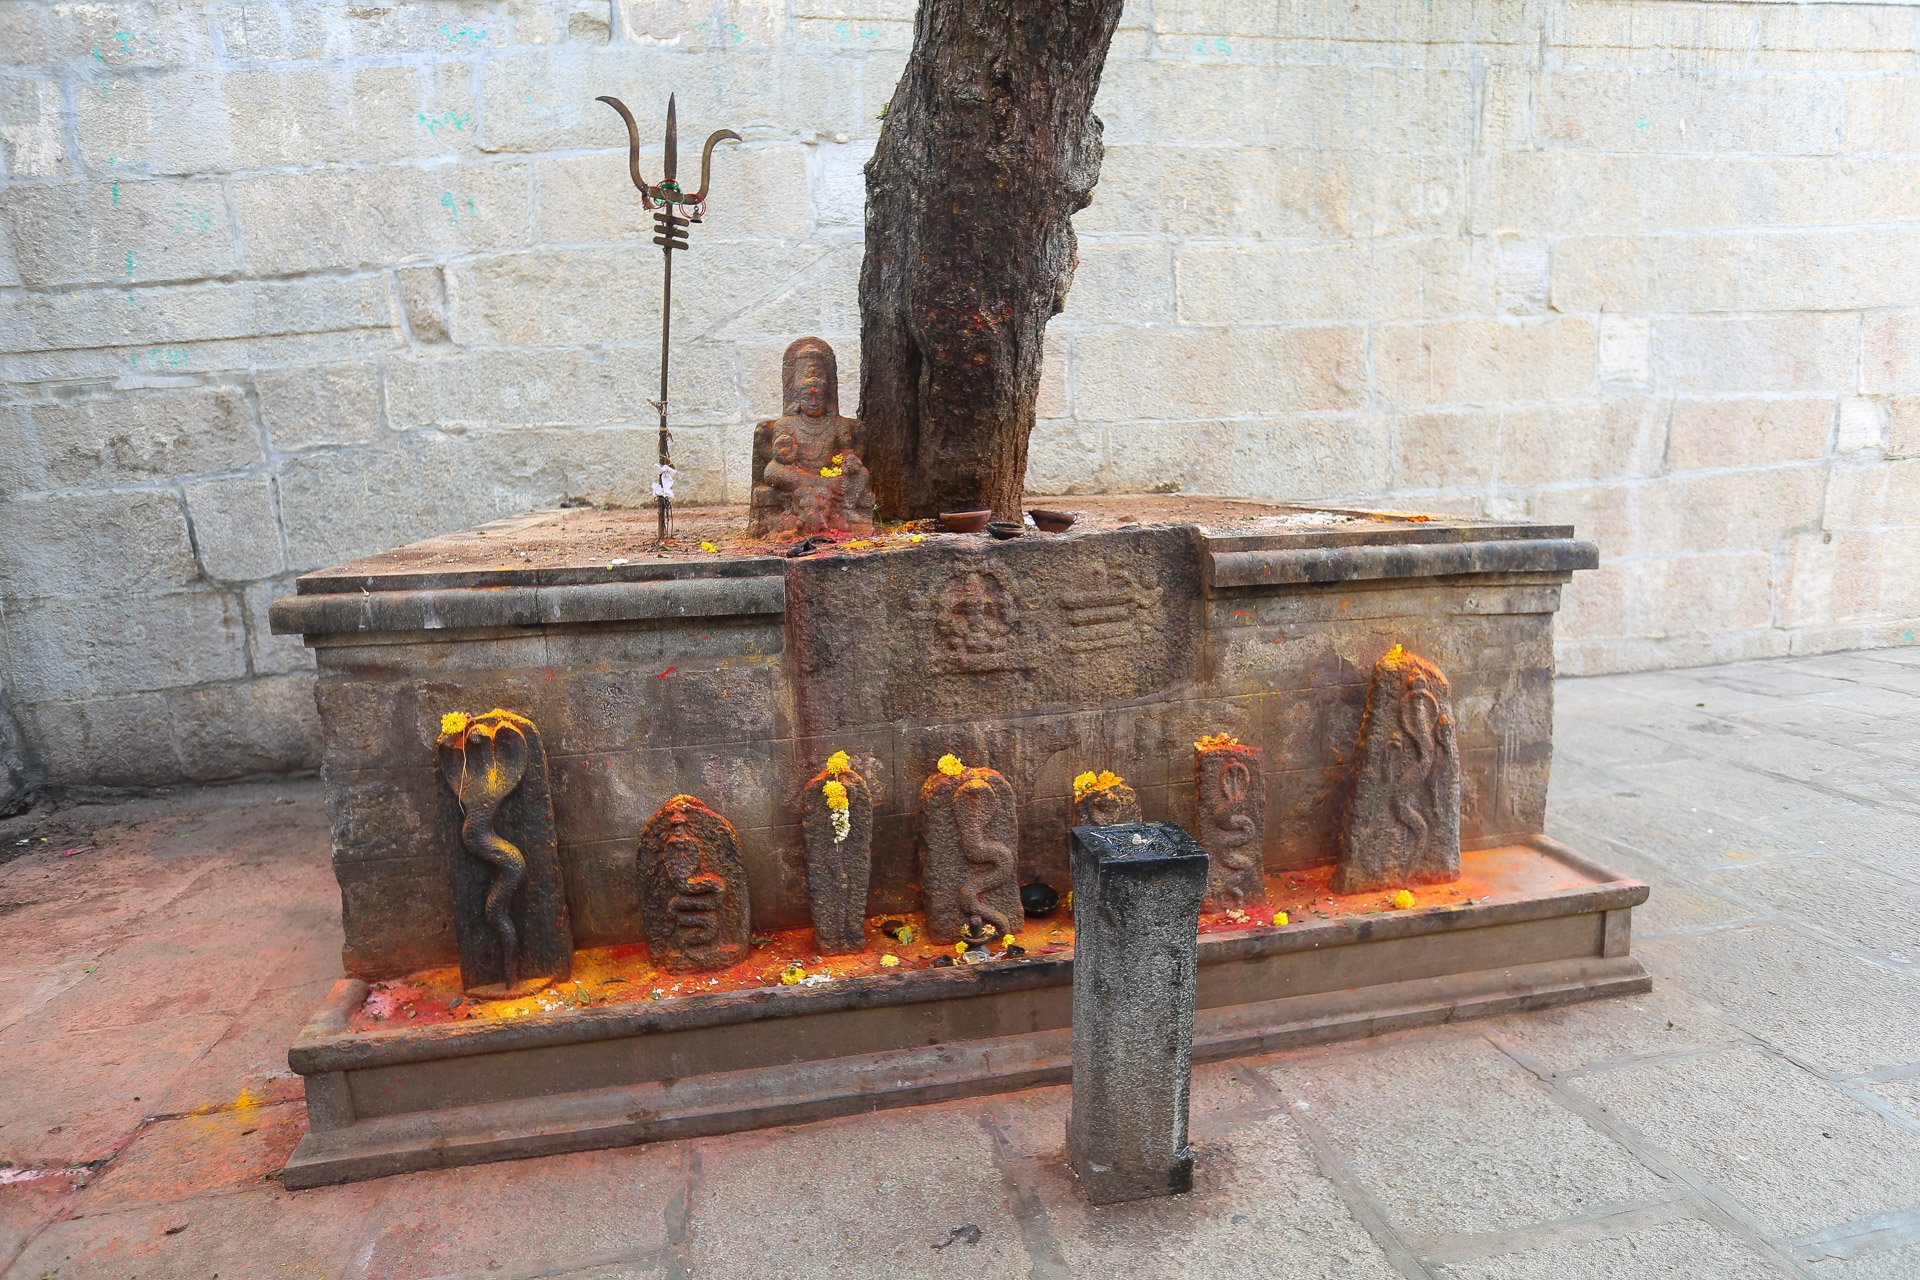 Dans le temple de Mahabaleshwara, un autel est dédié aux nagas, les serpents sacrés